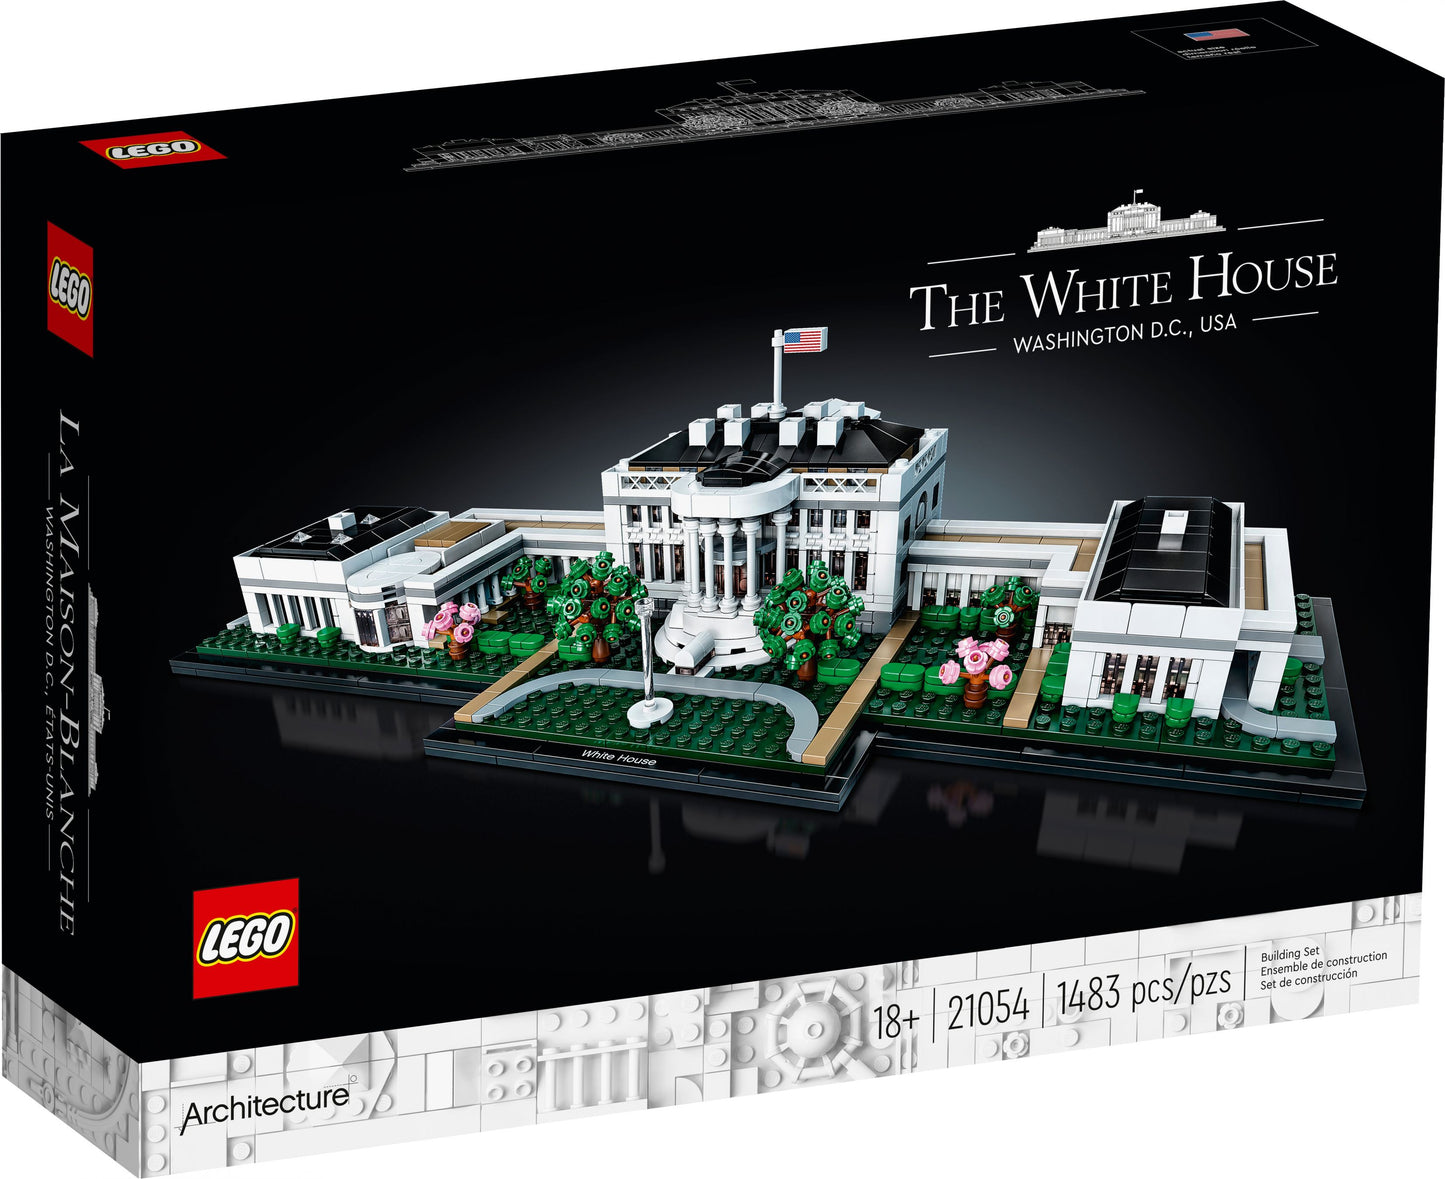 Architecture 21054 Das Weiße Haus